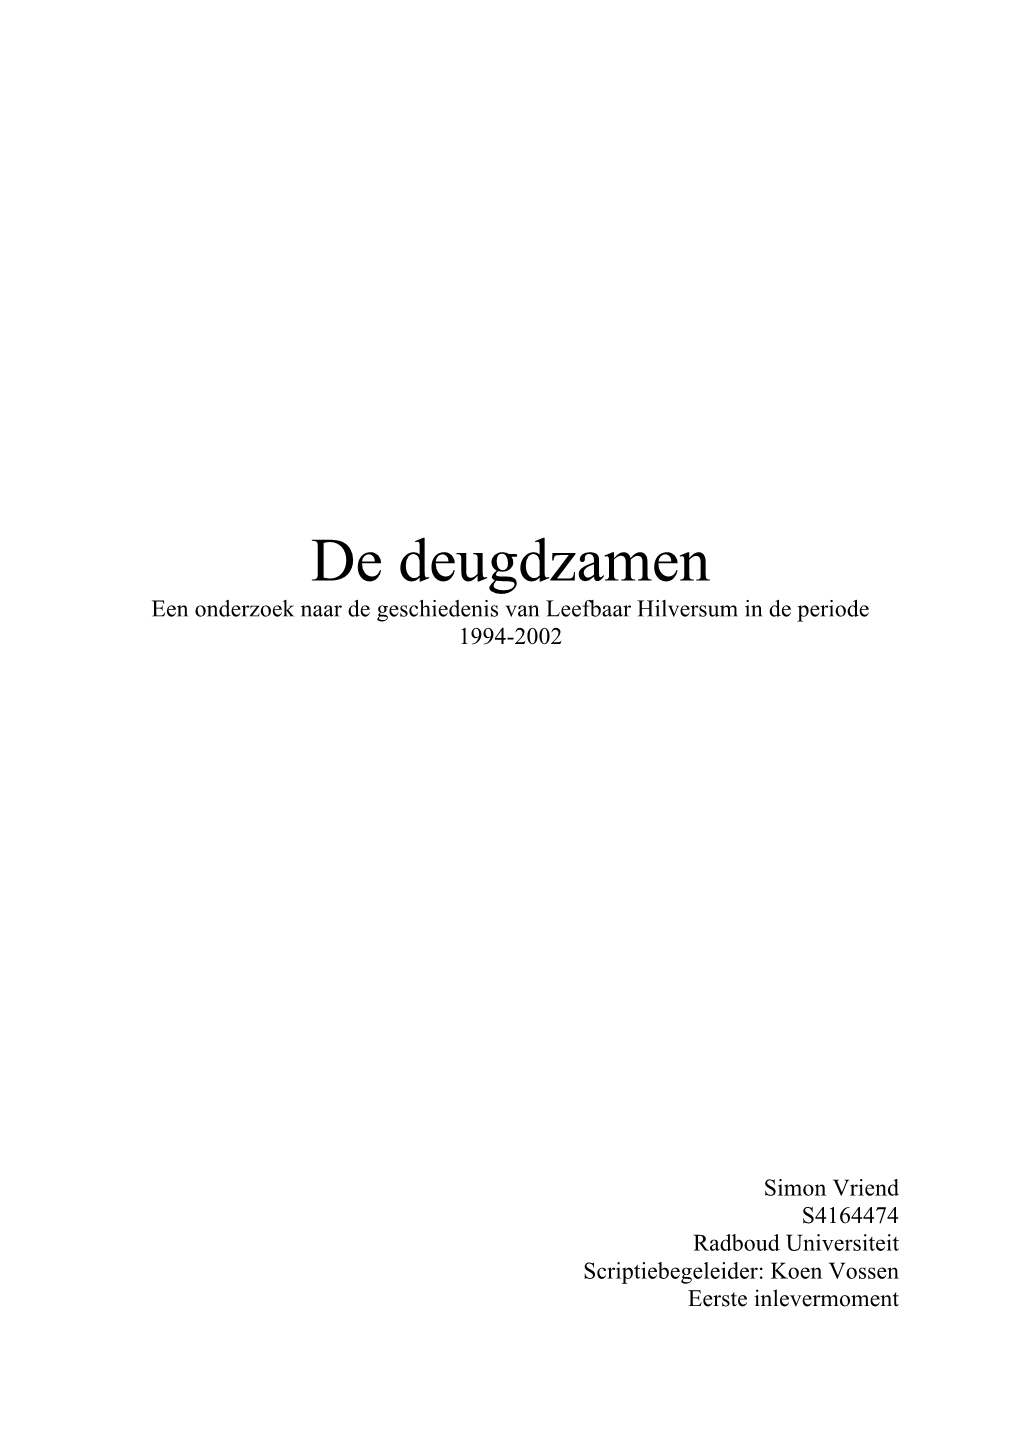 De Deugdzamen Een Onderzoek Naar De Geschiedenis Van Leefbaar Hilversum in De Periode 1994-2002